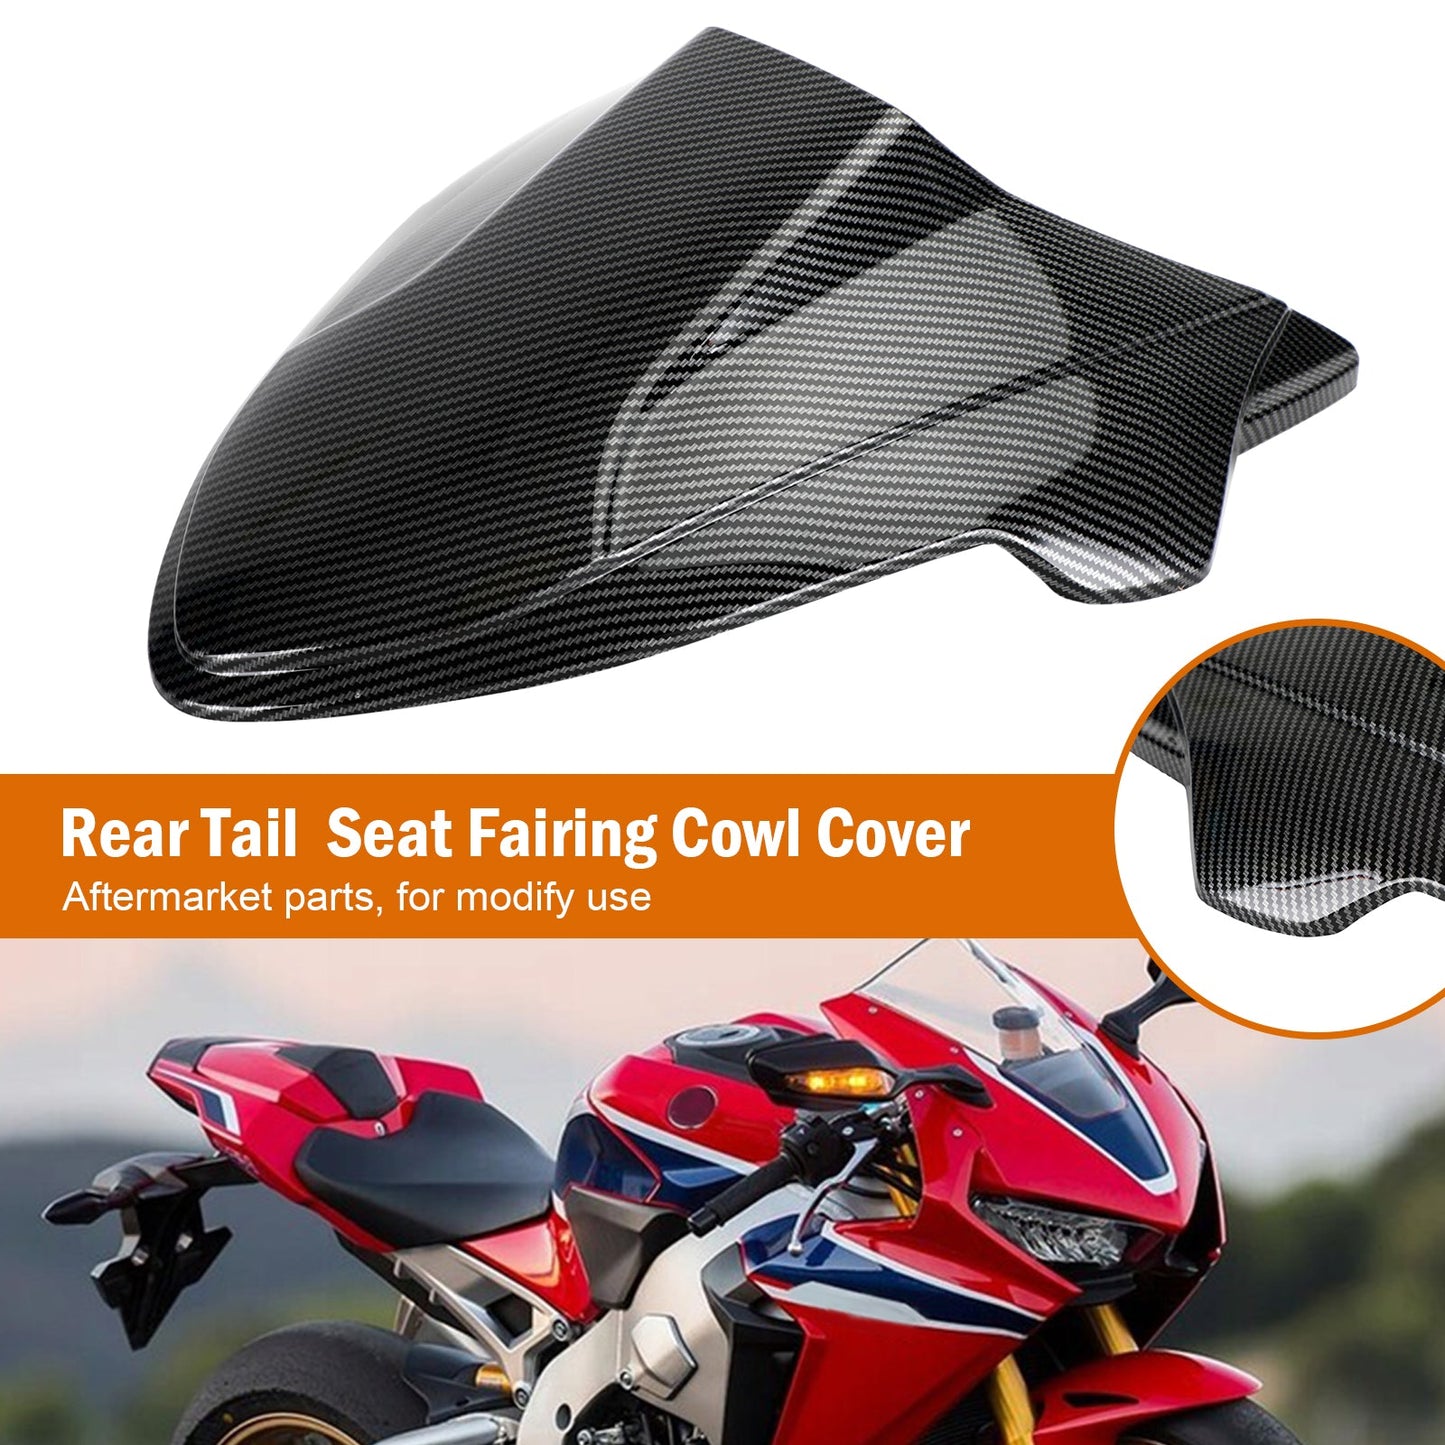 Rear Tail Seat Fairing Cowl Cover for Honda CB650R CBR650R 2021-2022 Black